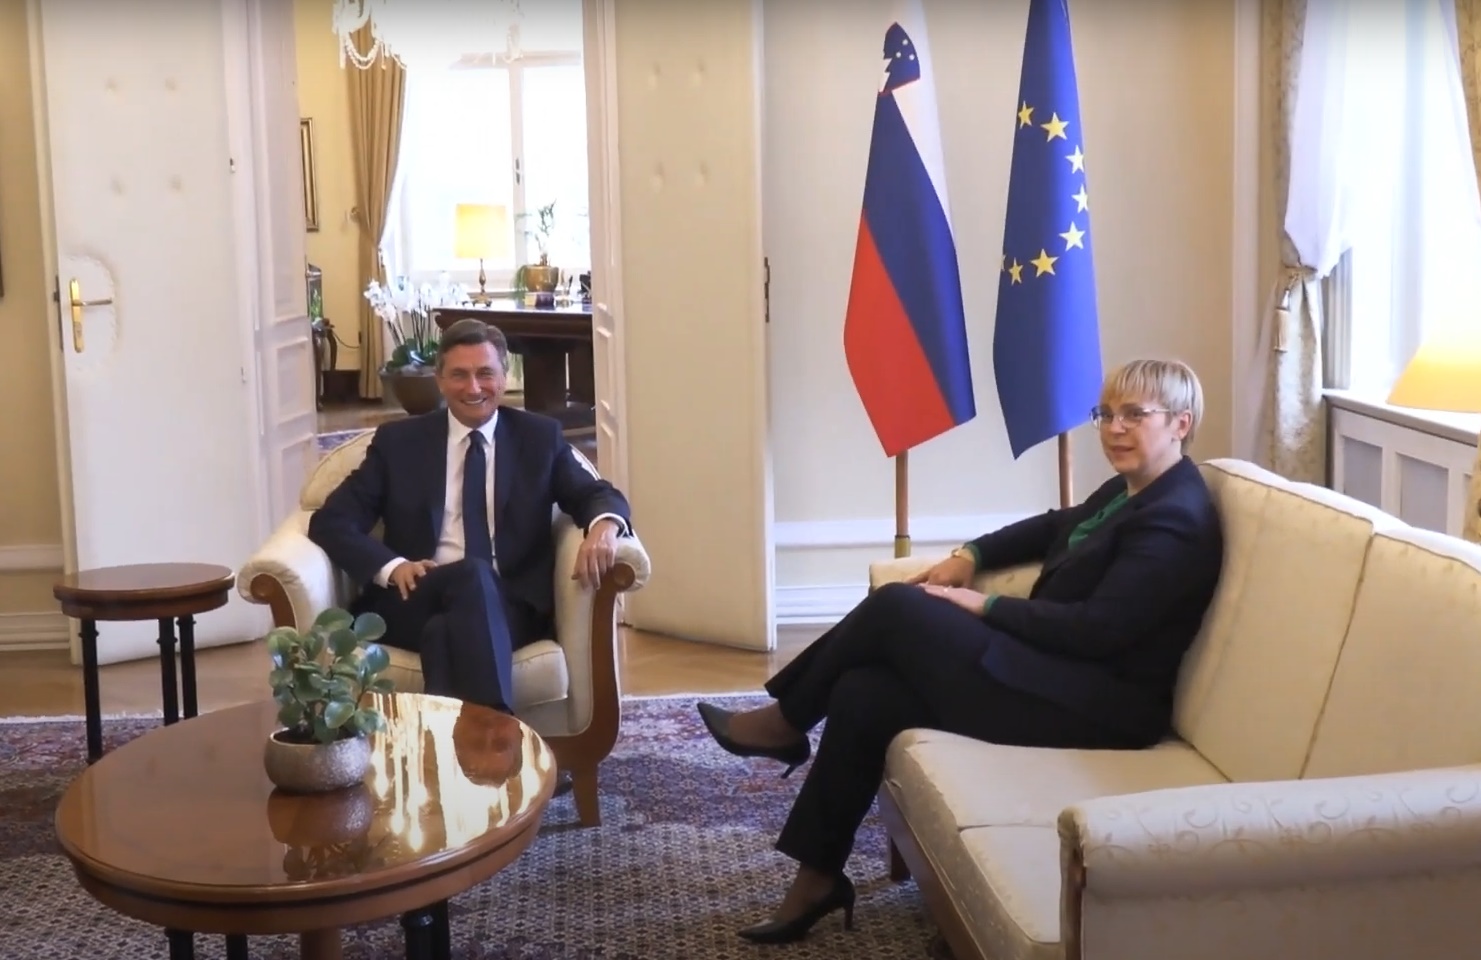 Sastanak nove predsednice Slovenije Pirc Musar i odlazećeg predsednika Pahora: Region Zapadnog Balkana treba da bude jedan od fokusa slovenačke politike!